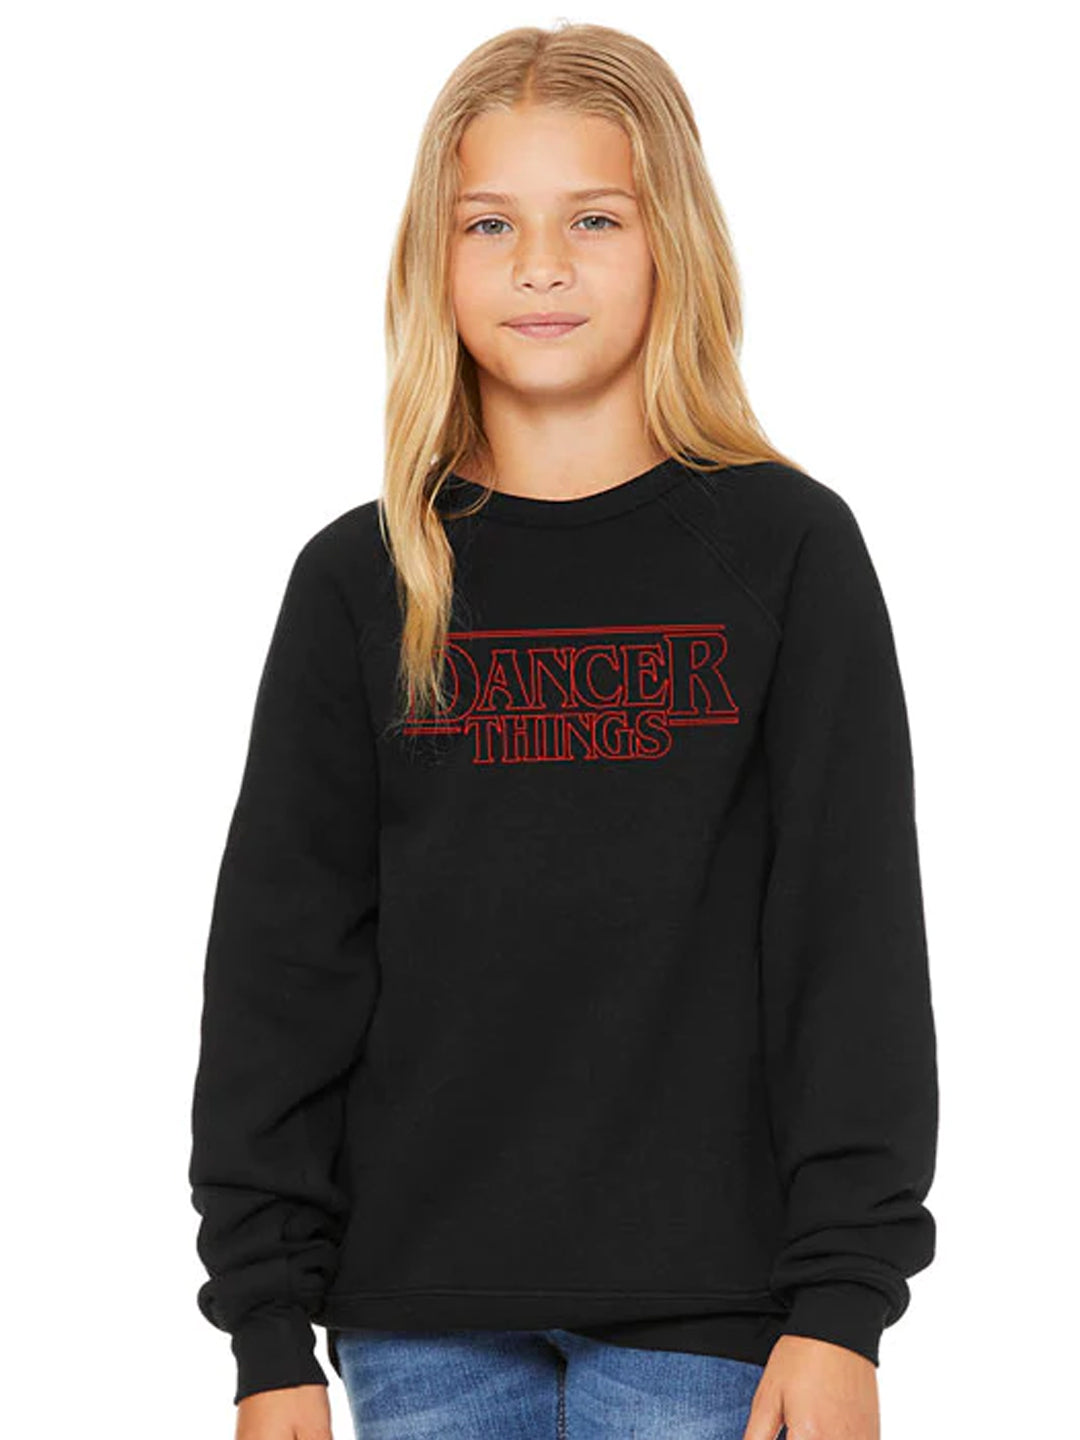 Dancer Things Sweatshirt - Child